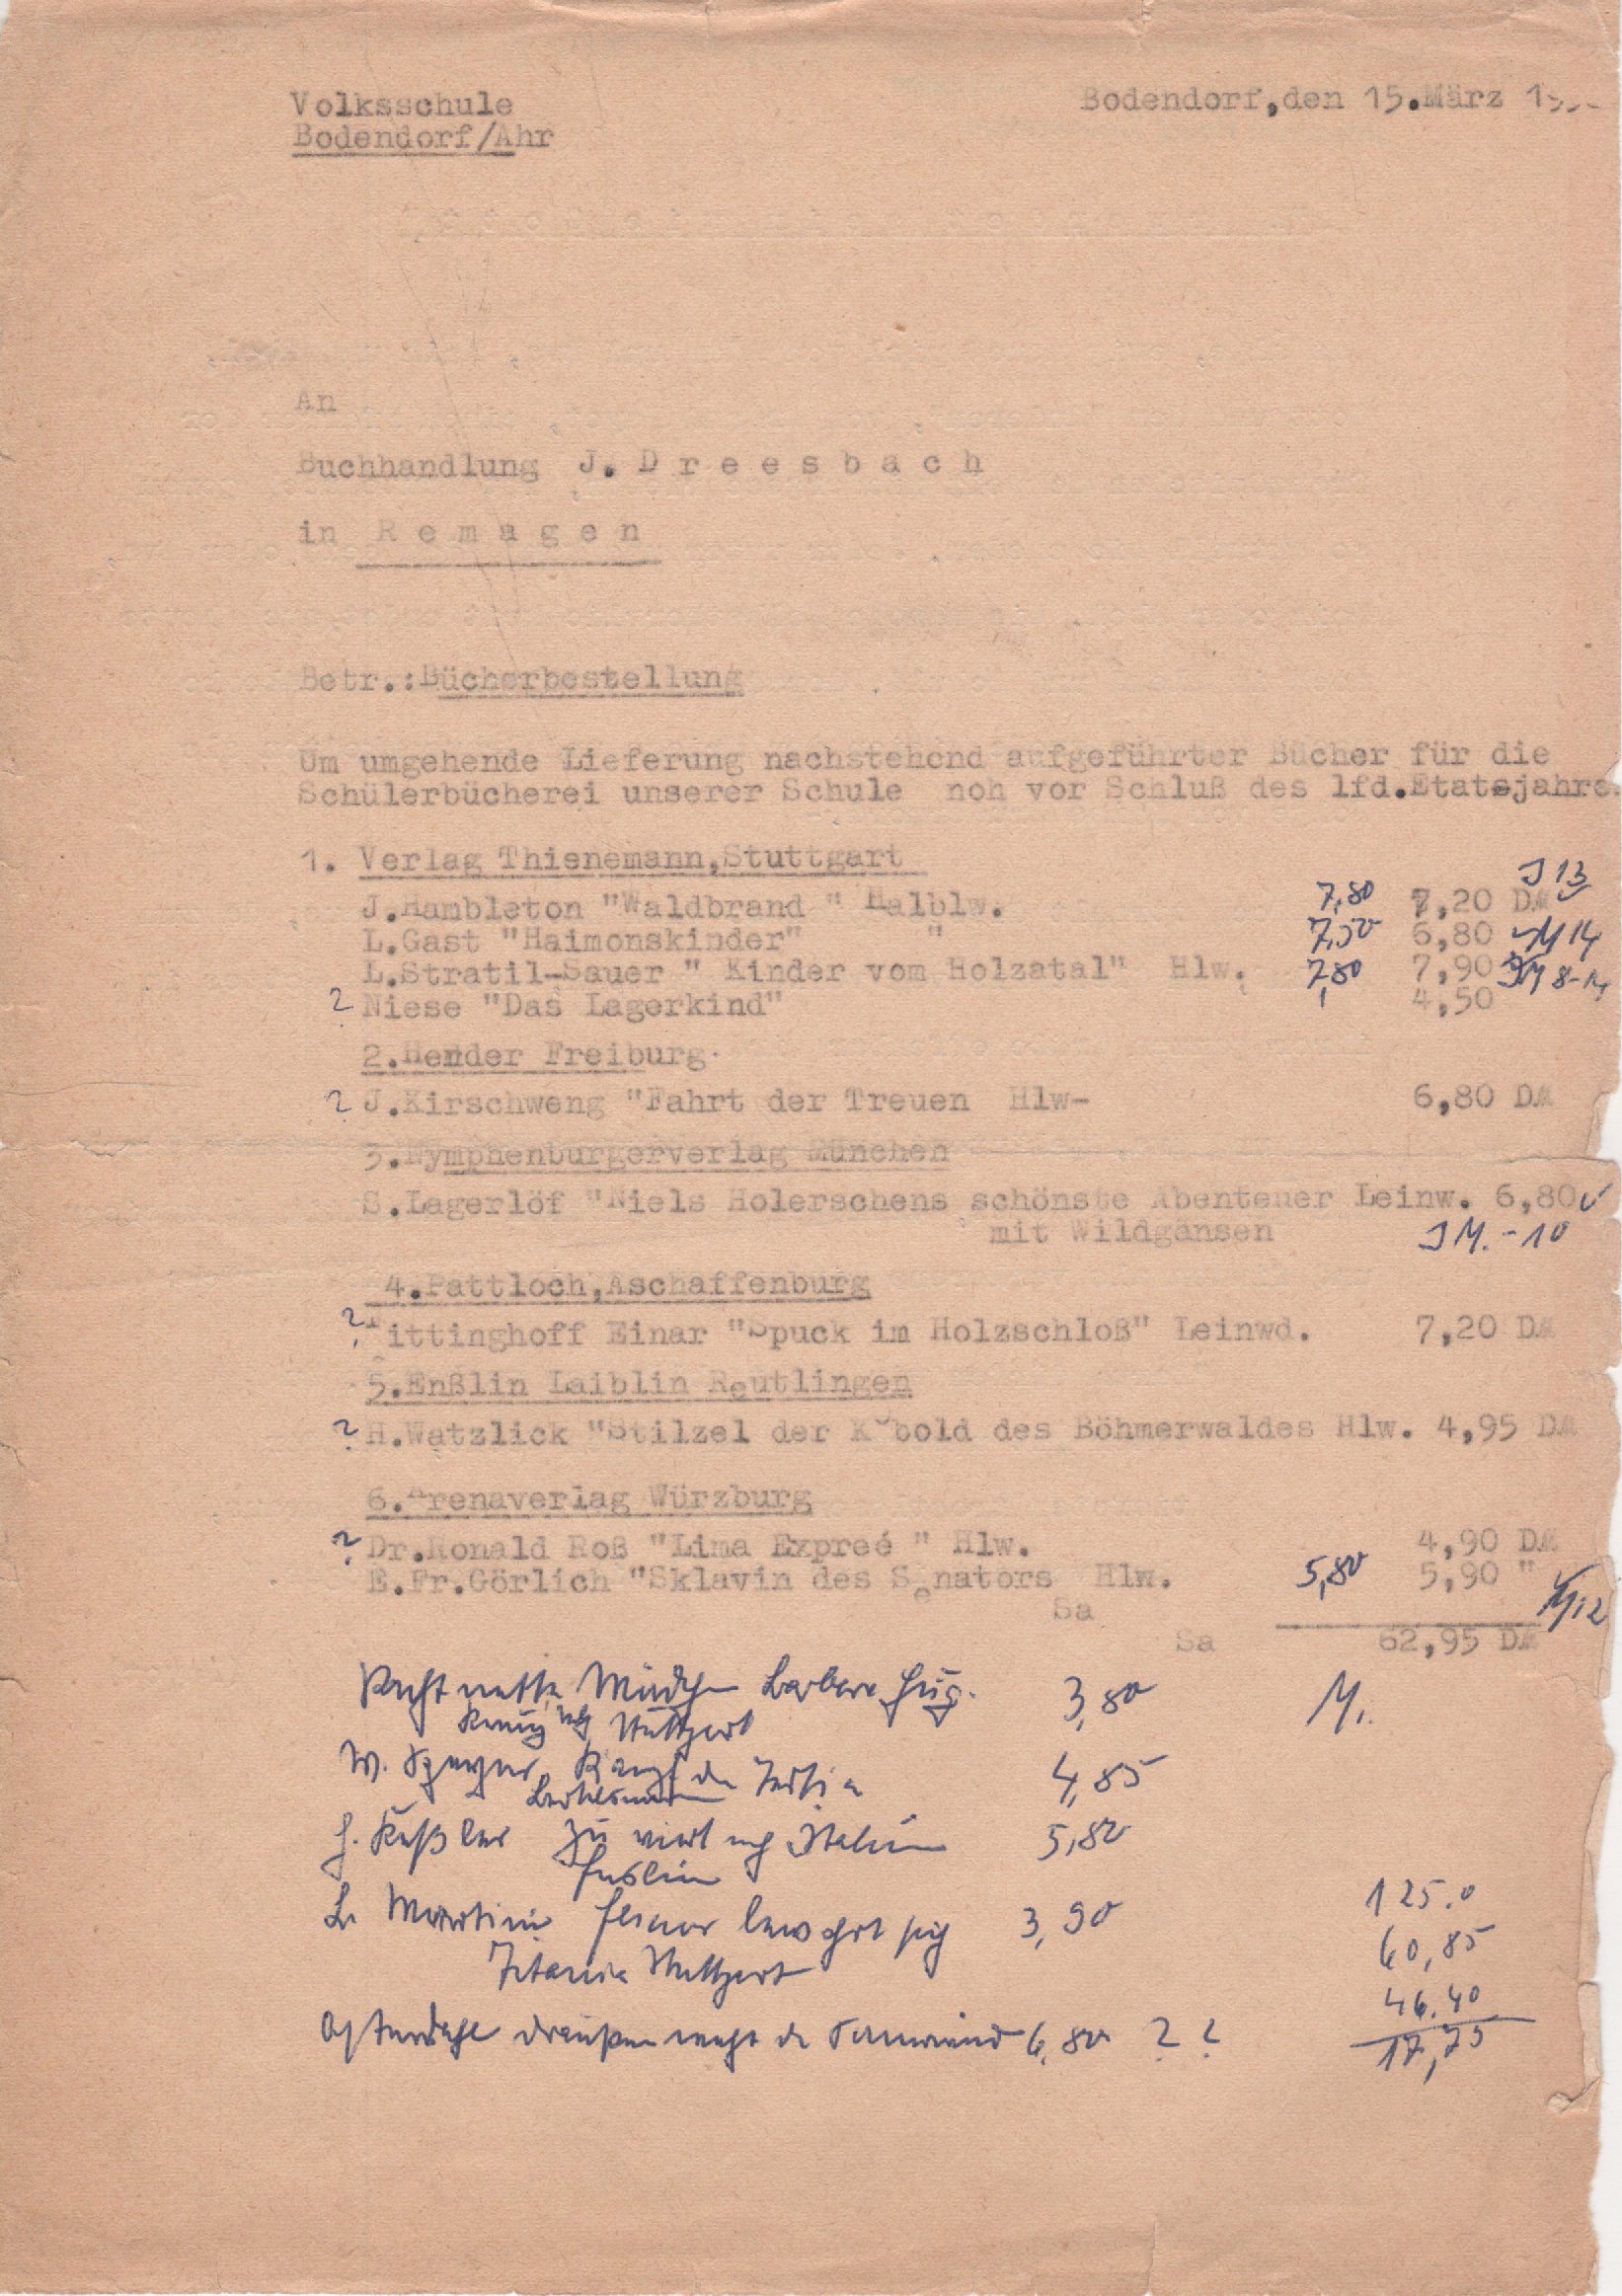 Bücherbestellung von der Kath. Volksschule Bodendorf vom 15. März 1959 (Heimatarchiv Bad Bodendorf CC BY-NC-SA)